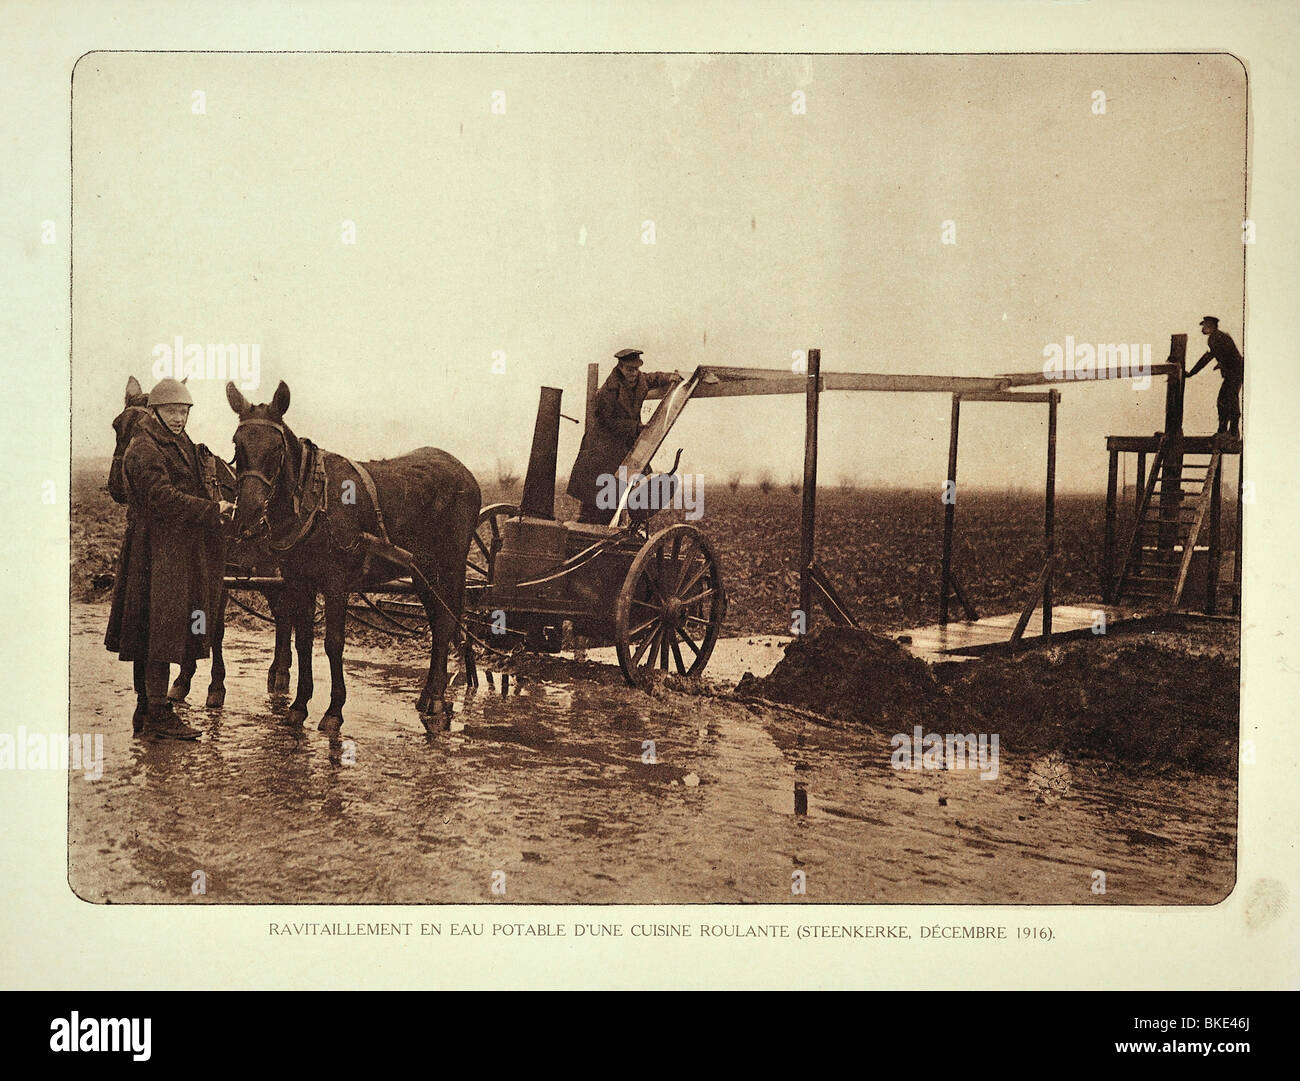 Los soldados de la primera guerra mundial en el suministro de agua potable para el campo de batalla en Steenkerke en Flandes Occidental durante la Primera Guerra Mundial, Bélgica Foto de stock